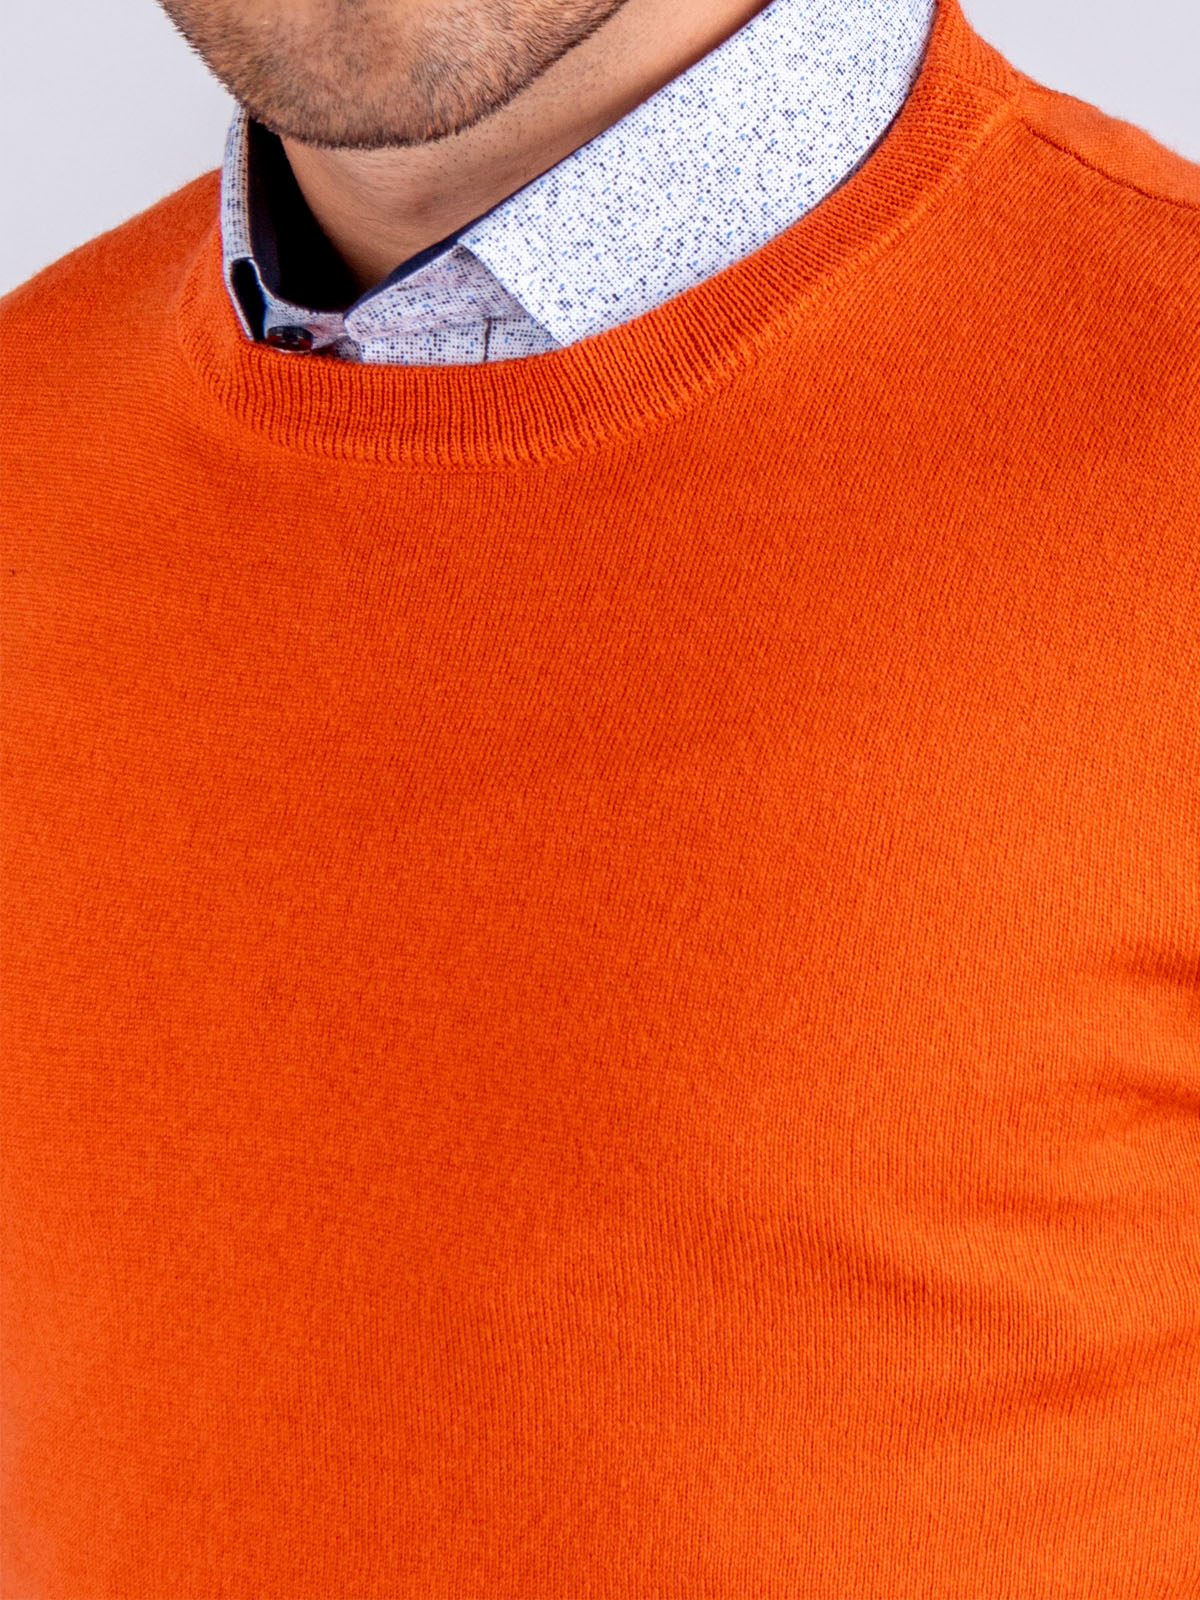 Pulover portocaliu cu lana merinos - 33082 € 42.74 img4